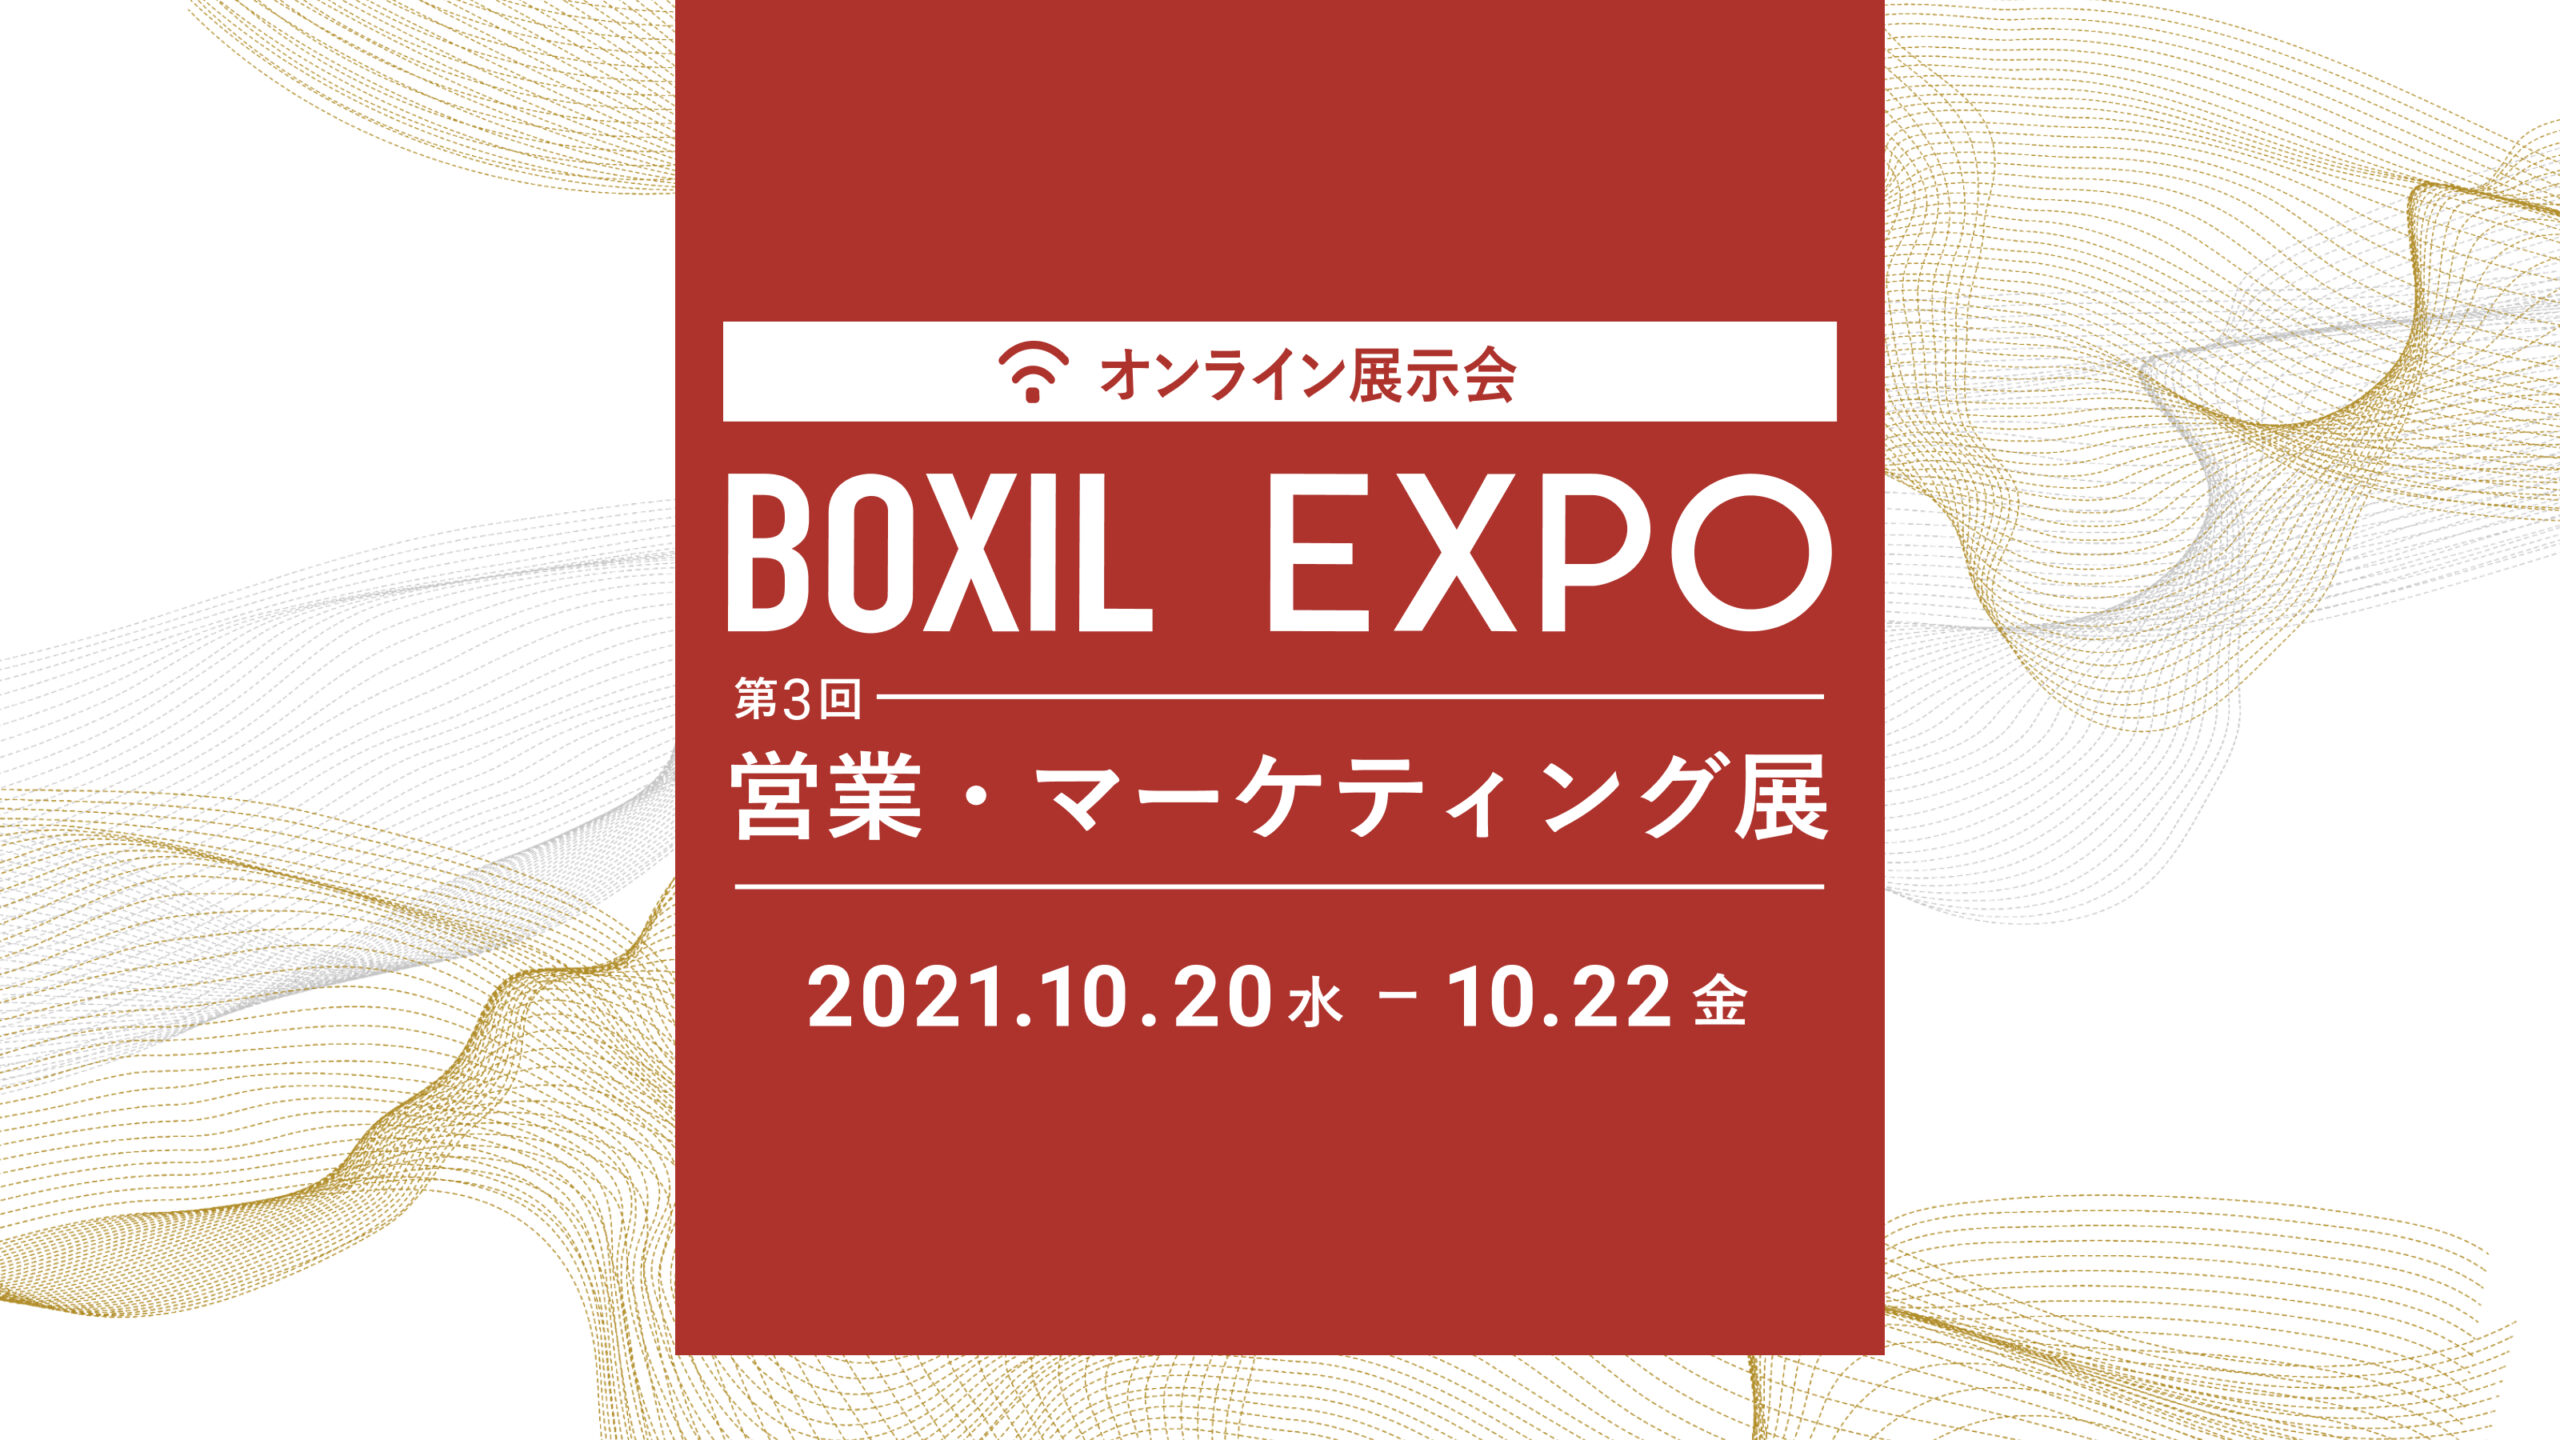 スマートキャンプ株式会社の主催するオンライン展示会「BOXIL EXPO 第3回 営業・マーケティング展」に代表 八木が出演します。